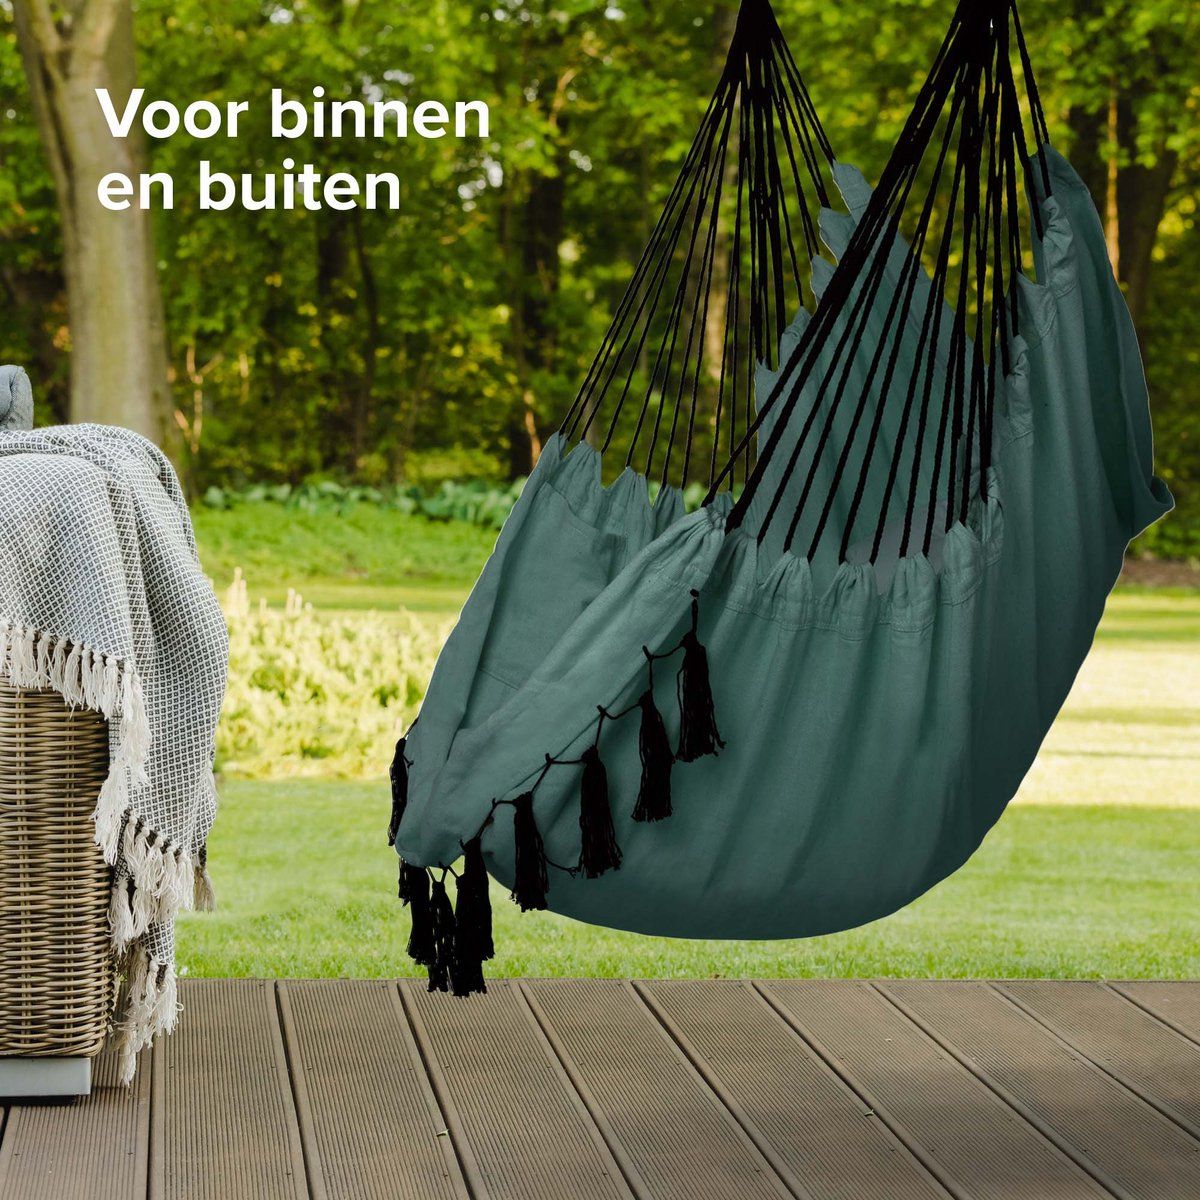 Hangstoel: Beste Hangstoel in de Tuin - Makeover.nl